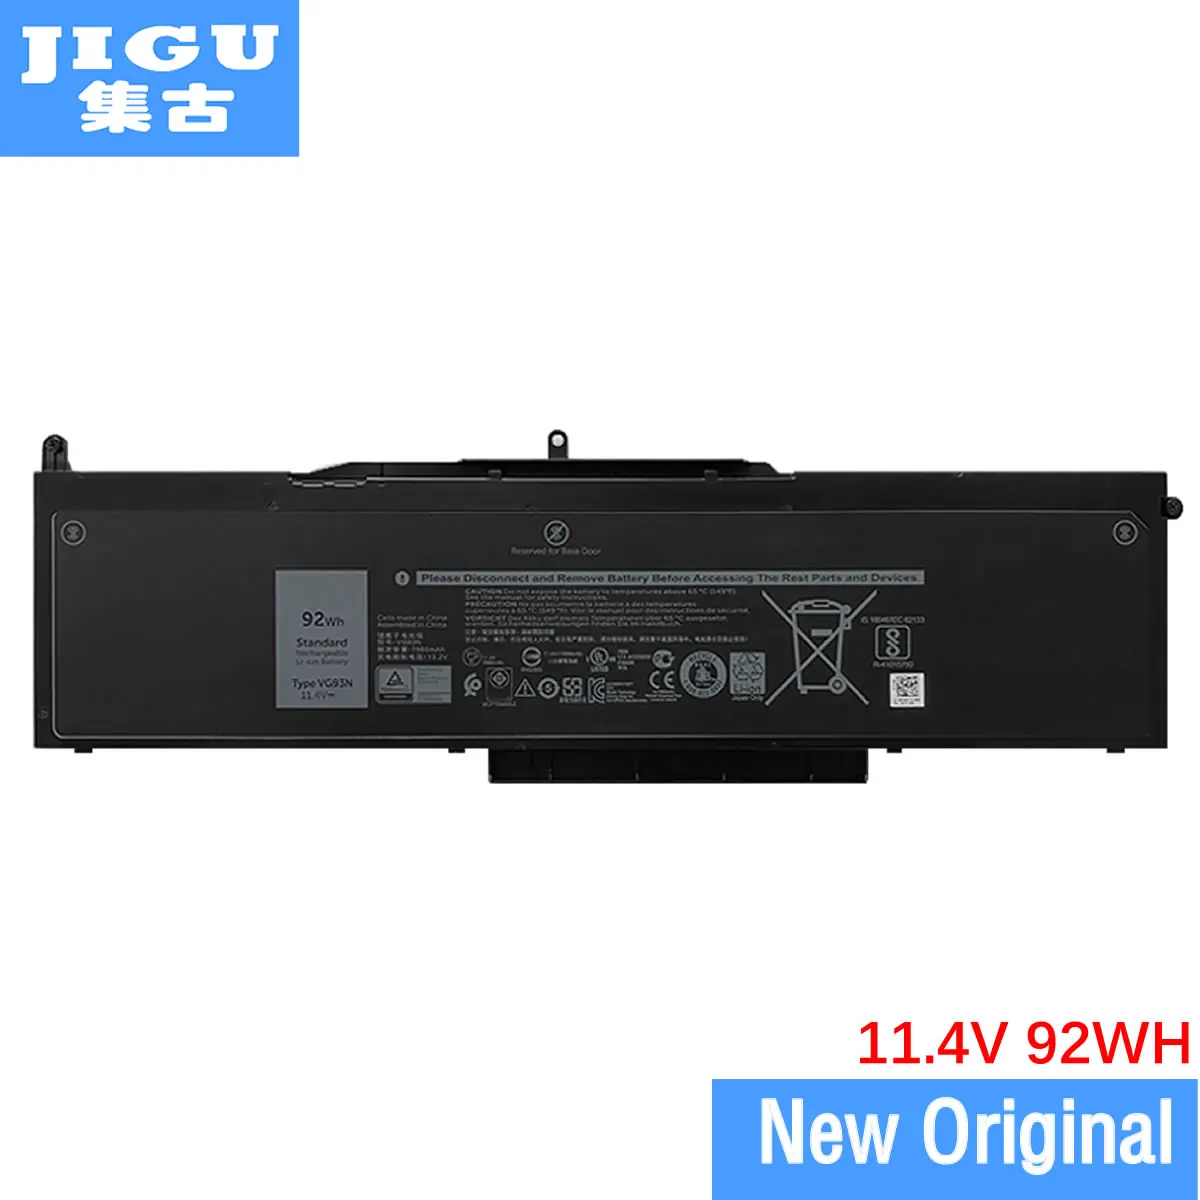 JIGU Original da Bateria do Laptop VG93N WFWKK Para DELL Latitude 5580 Para Precisão de 15 3520 Para Precisão 3530